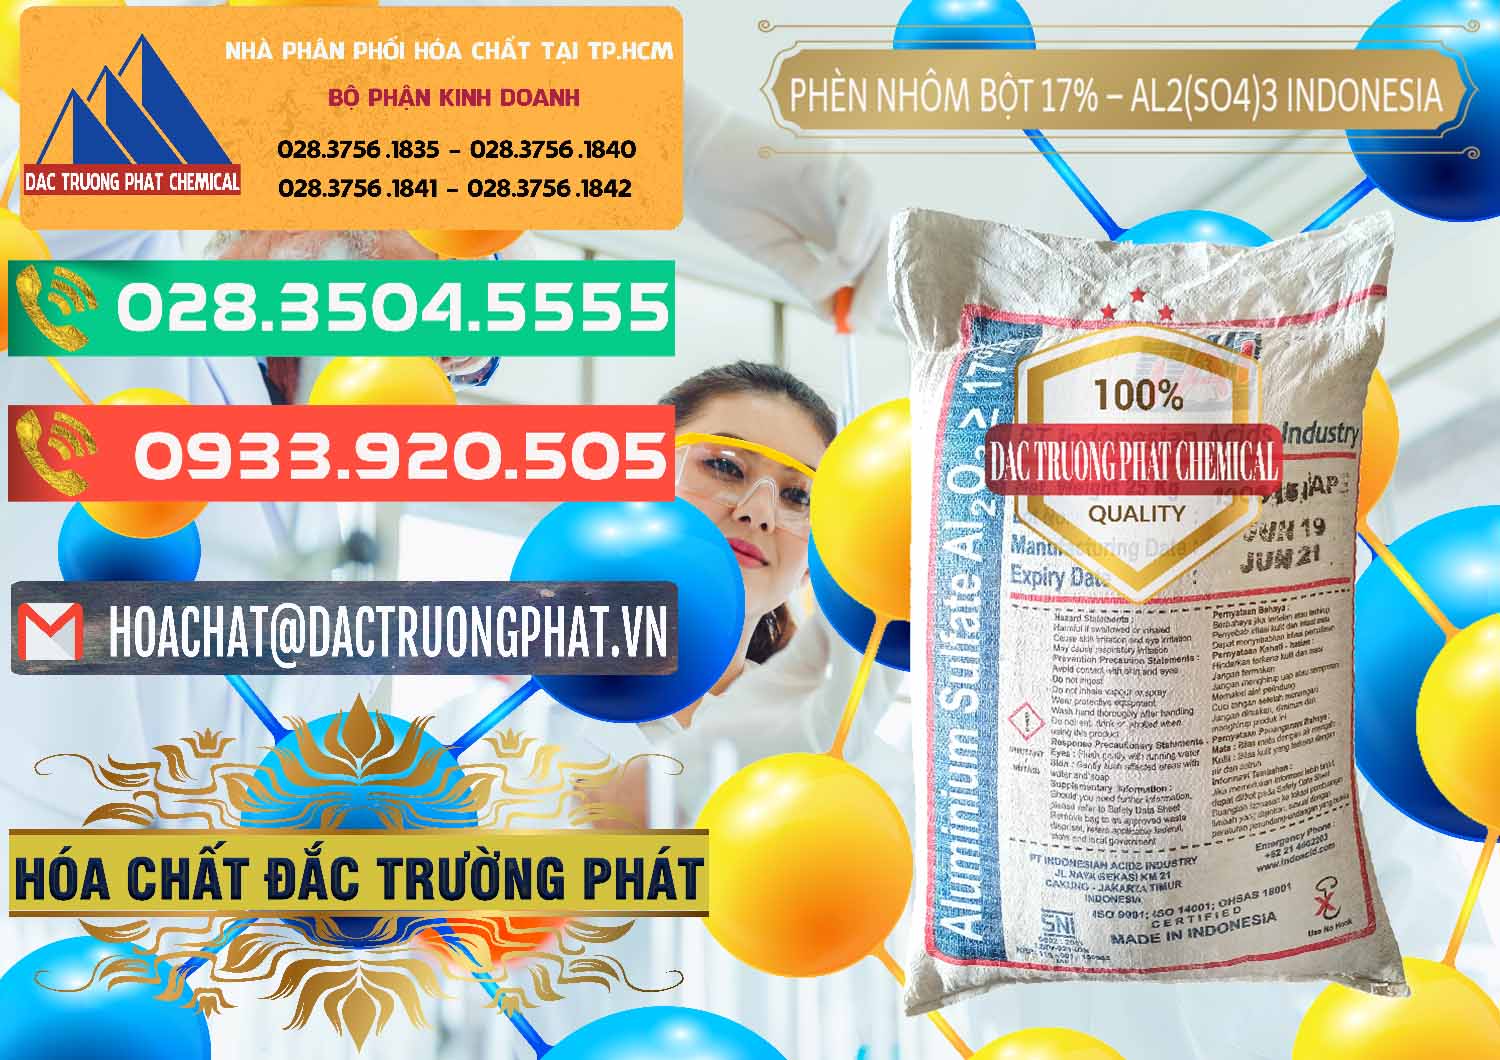 Nơi cung ứng & bán Phèn Nhôm Bột - Al2(SO4)3 17% bao 25kg Indonesia - 0114 - Công ty nhập khẩu và cung cấp hóa chất tại TP.HCM - congtyhoachat.com.vn